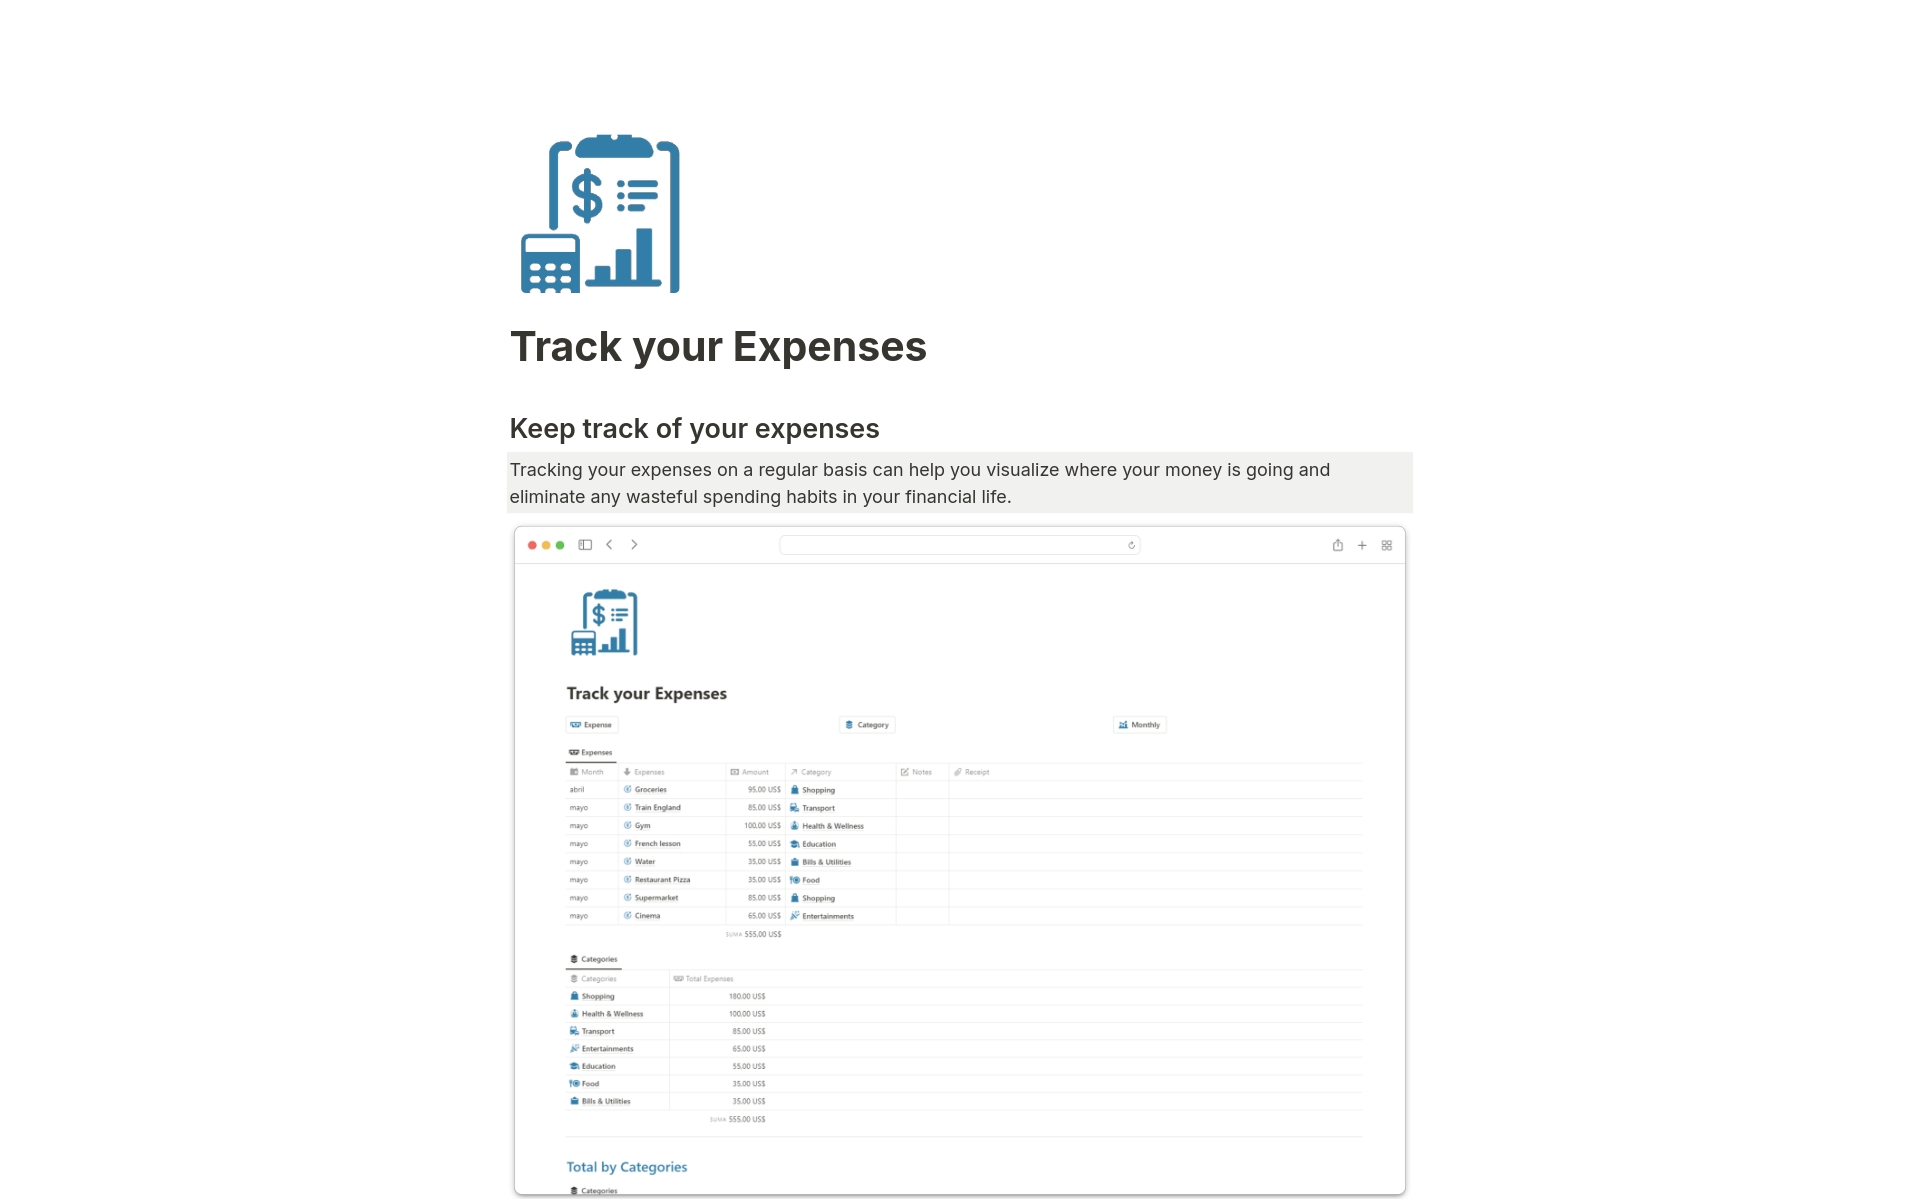 Uma prévia do modelo para Track your Expenses